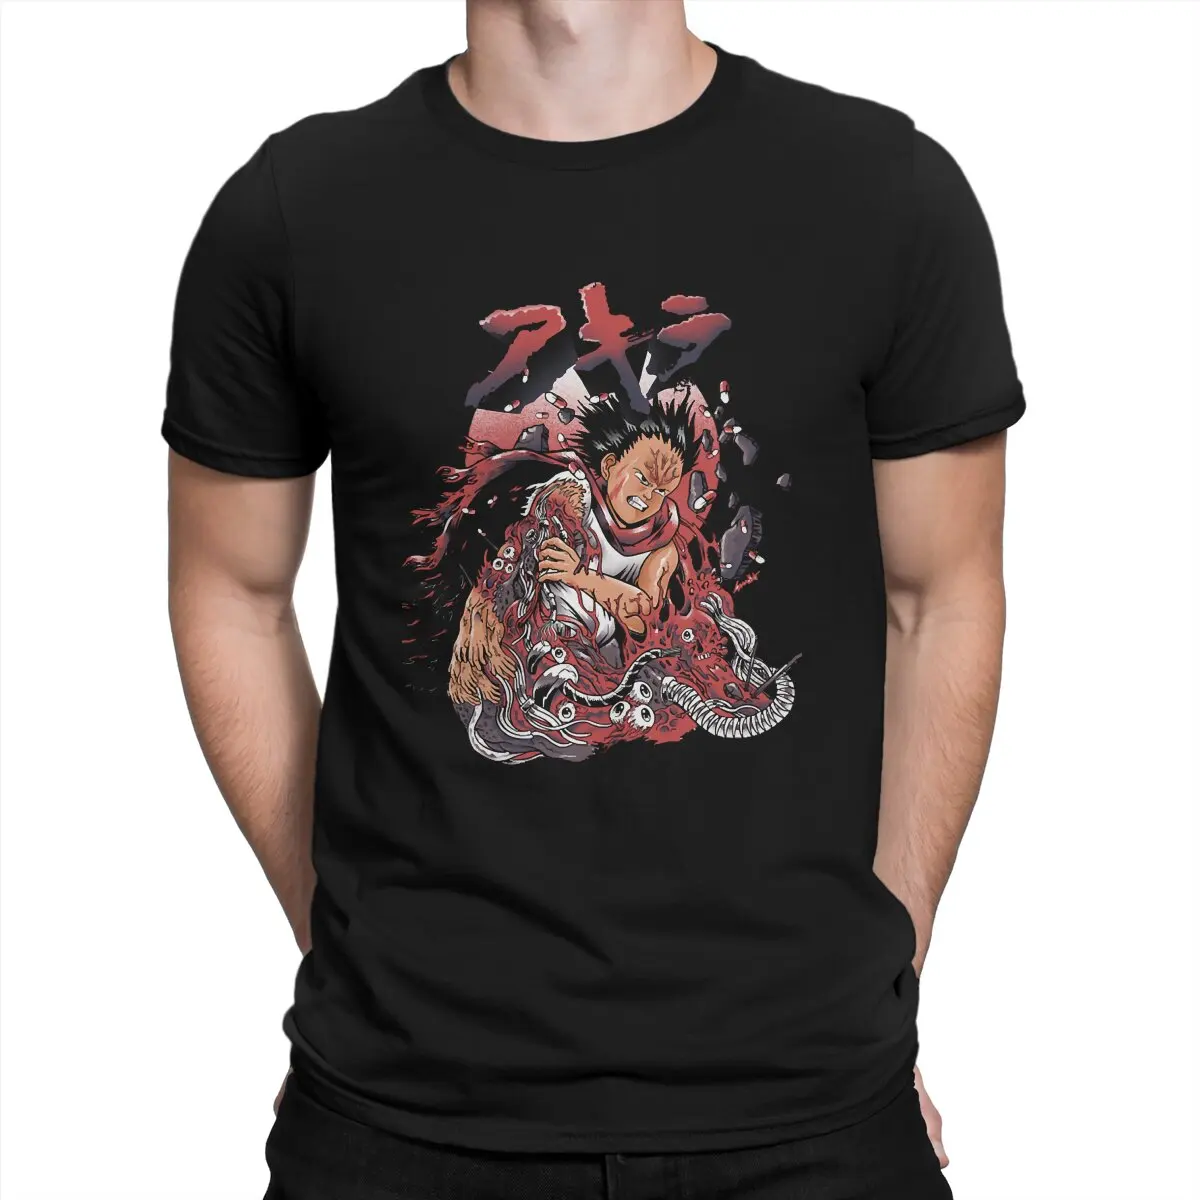 

Мужские футболки Tetsuo с художественным рисунком, одежда для кино Akira Kaori, крутая футболка с коротким рукавом и круглым вырезом, футболка с графическим принтом